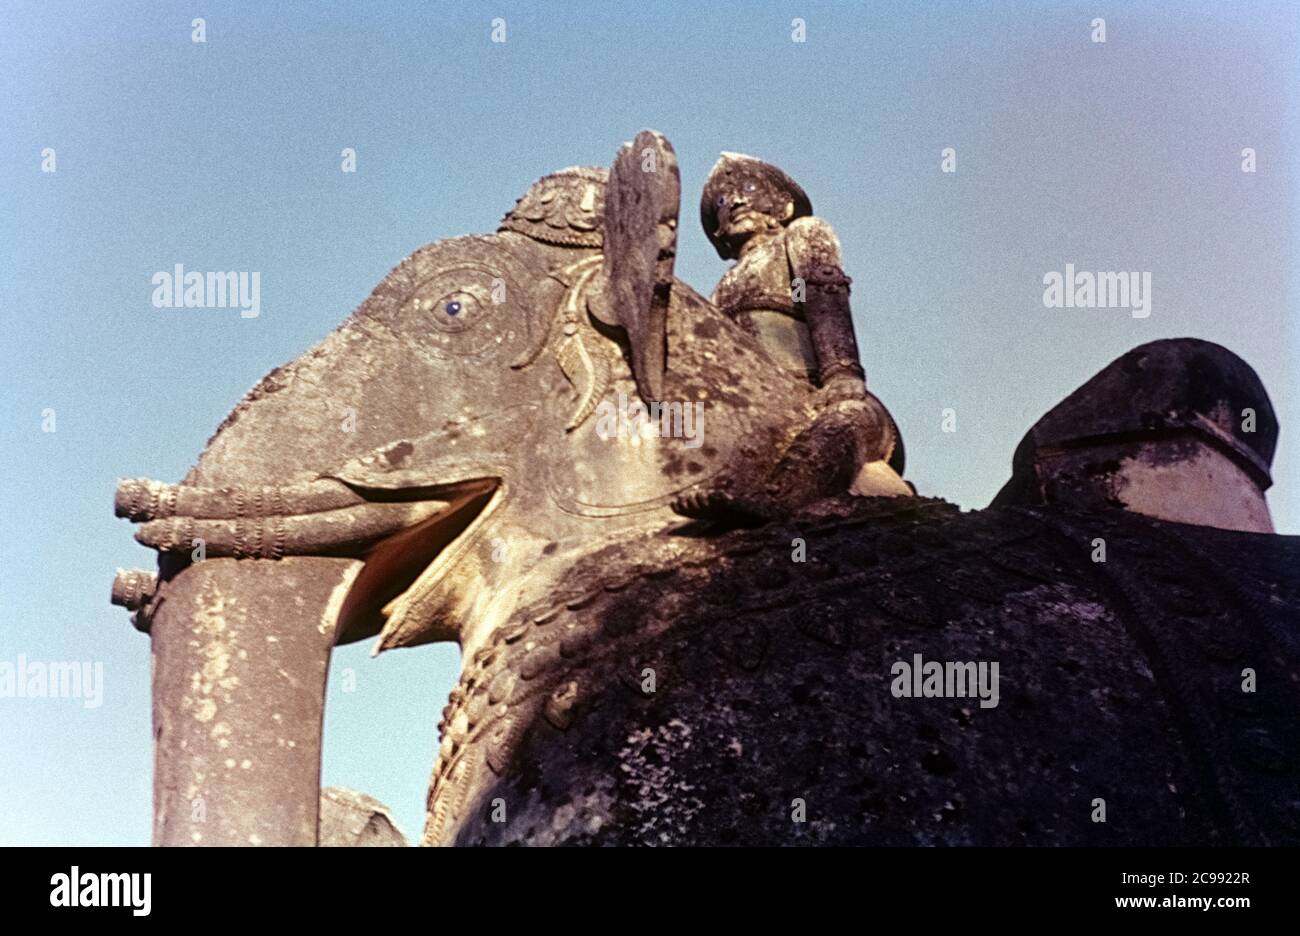 Dettaglio di una statua di un tempio abbandonato. Un uomo è seduto su un elefante, entrambi con occhi blu. Tamil Nadu, India, 1961/1962 Foto Stock